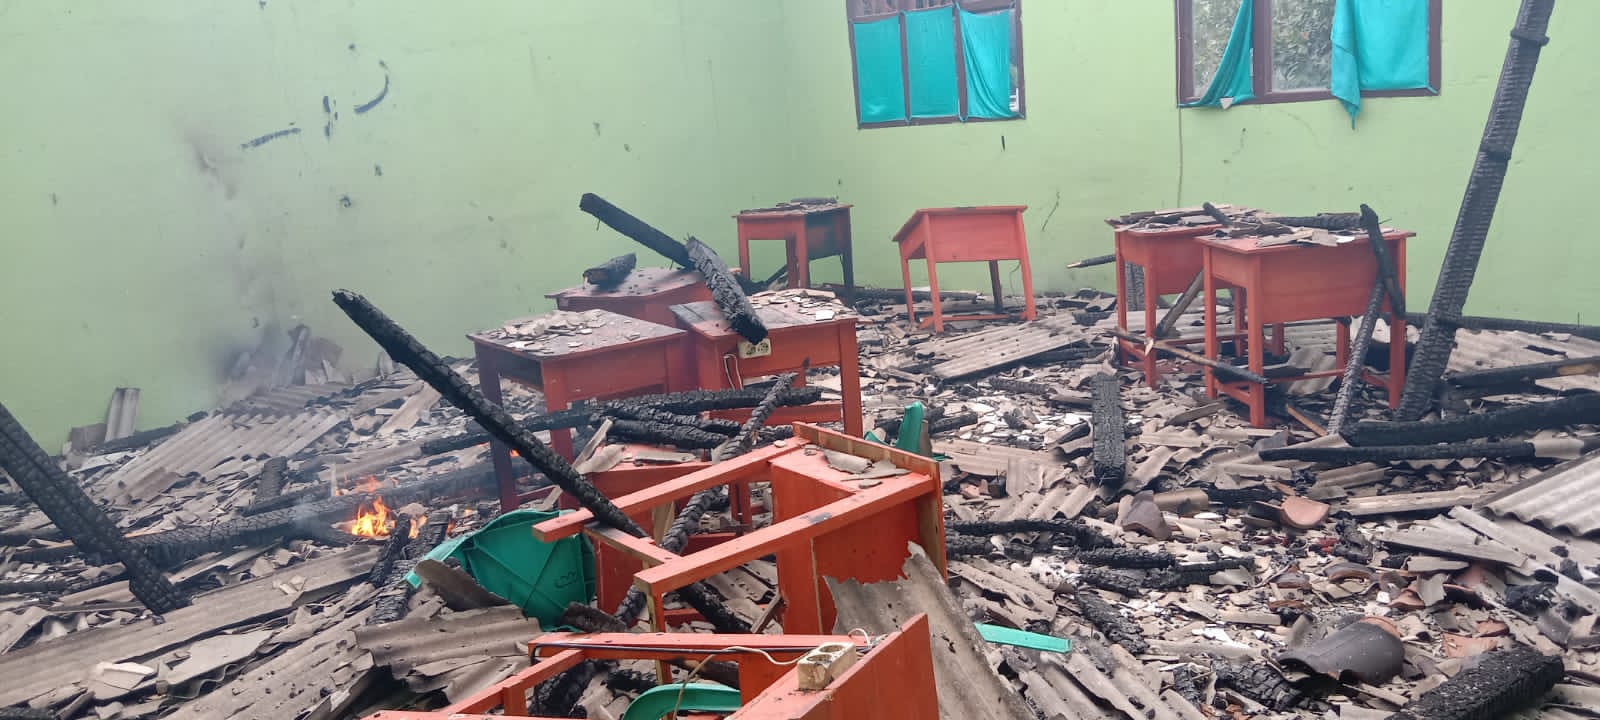 Yayasan Pendidikan Islam Terbakar, 14 ruangan Hangus